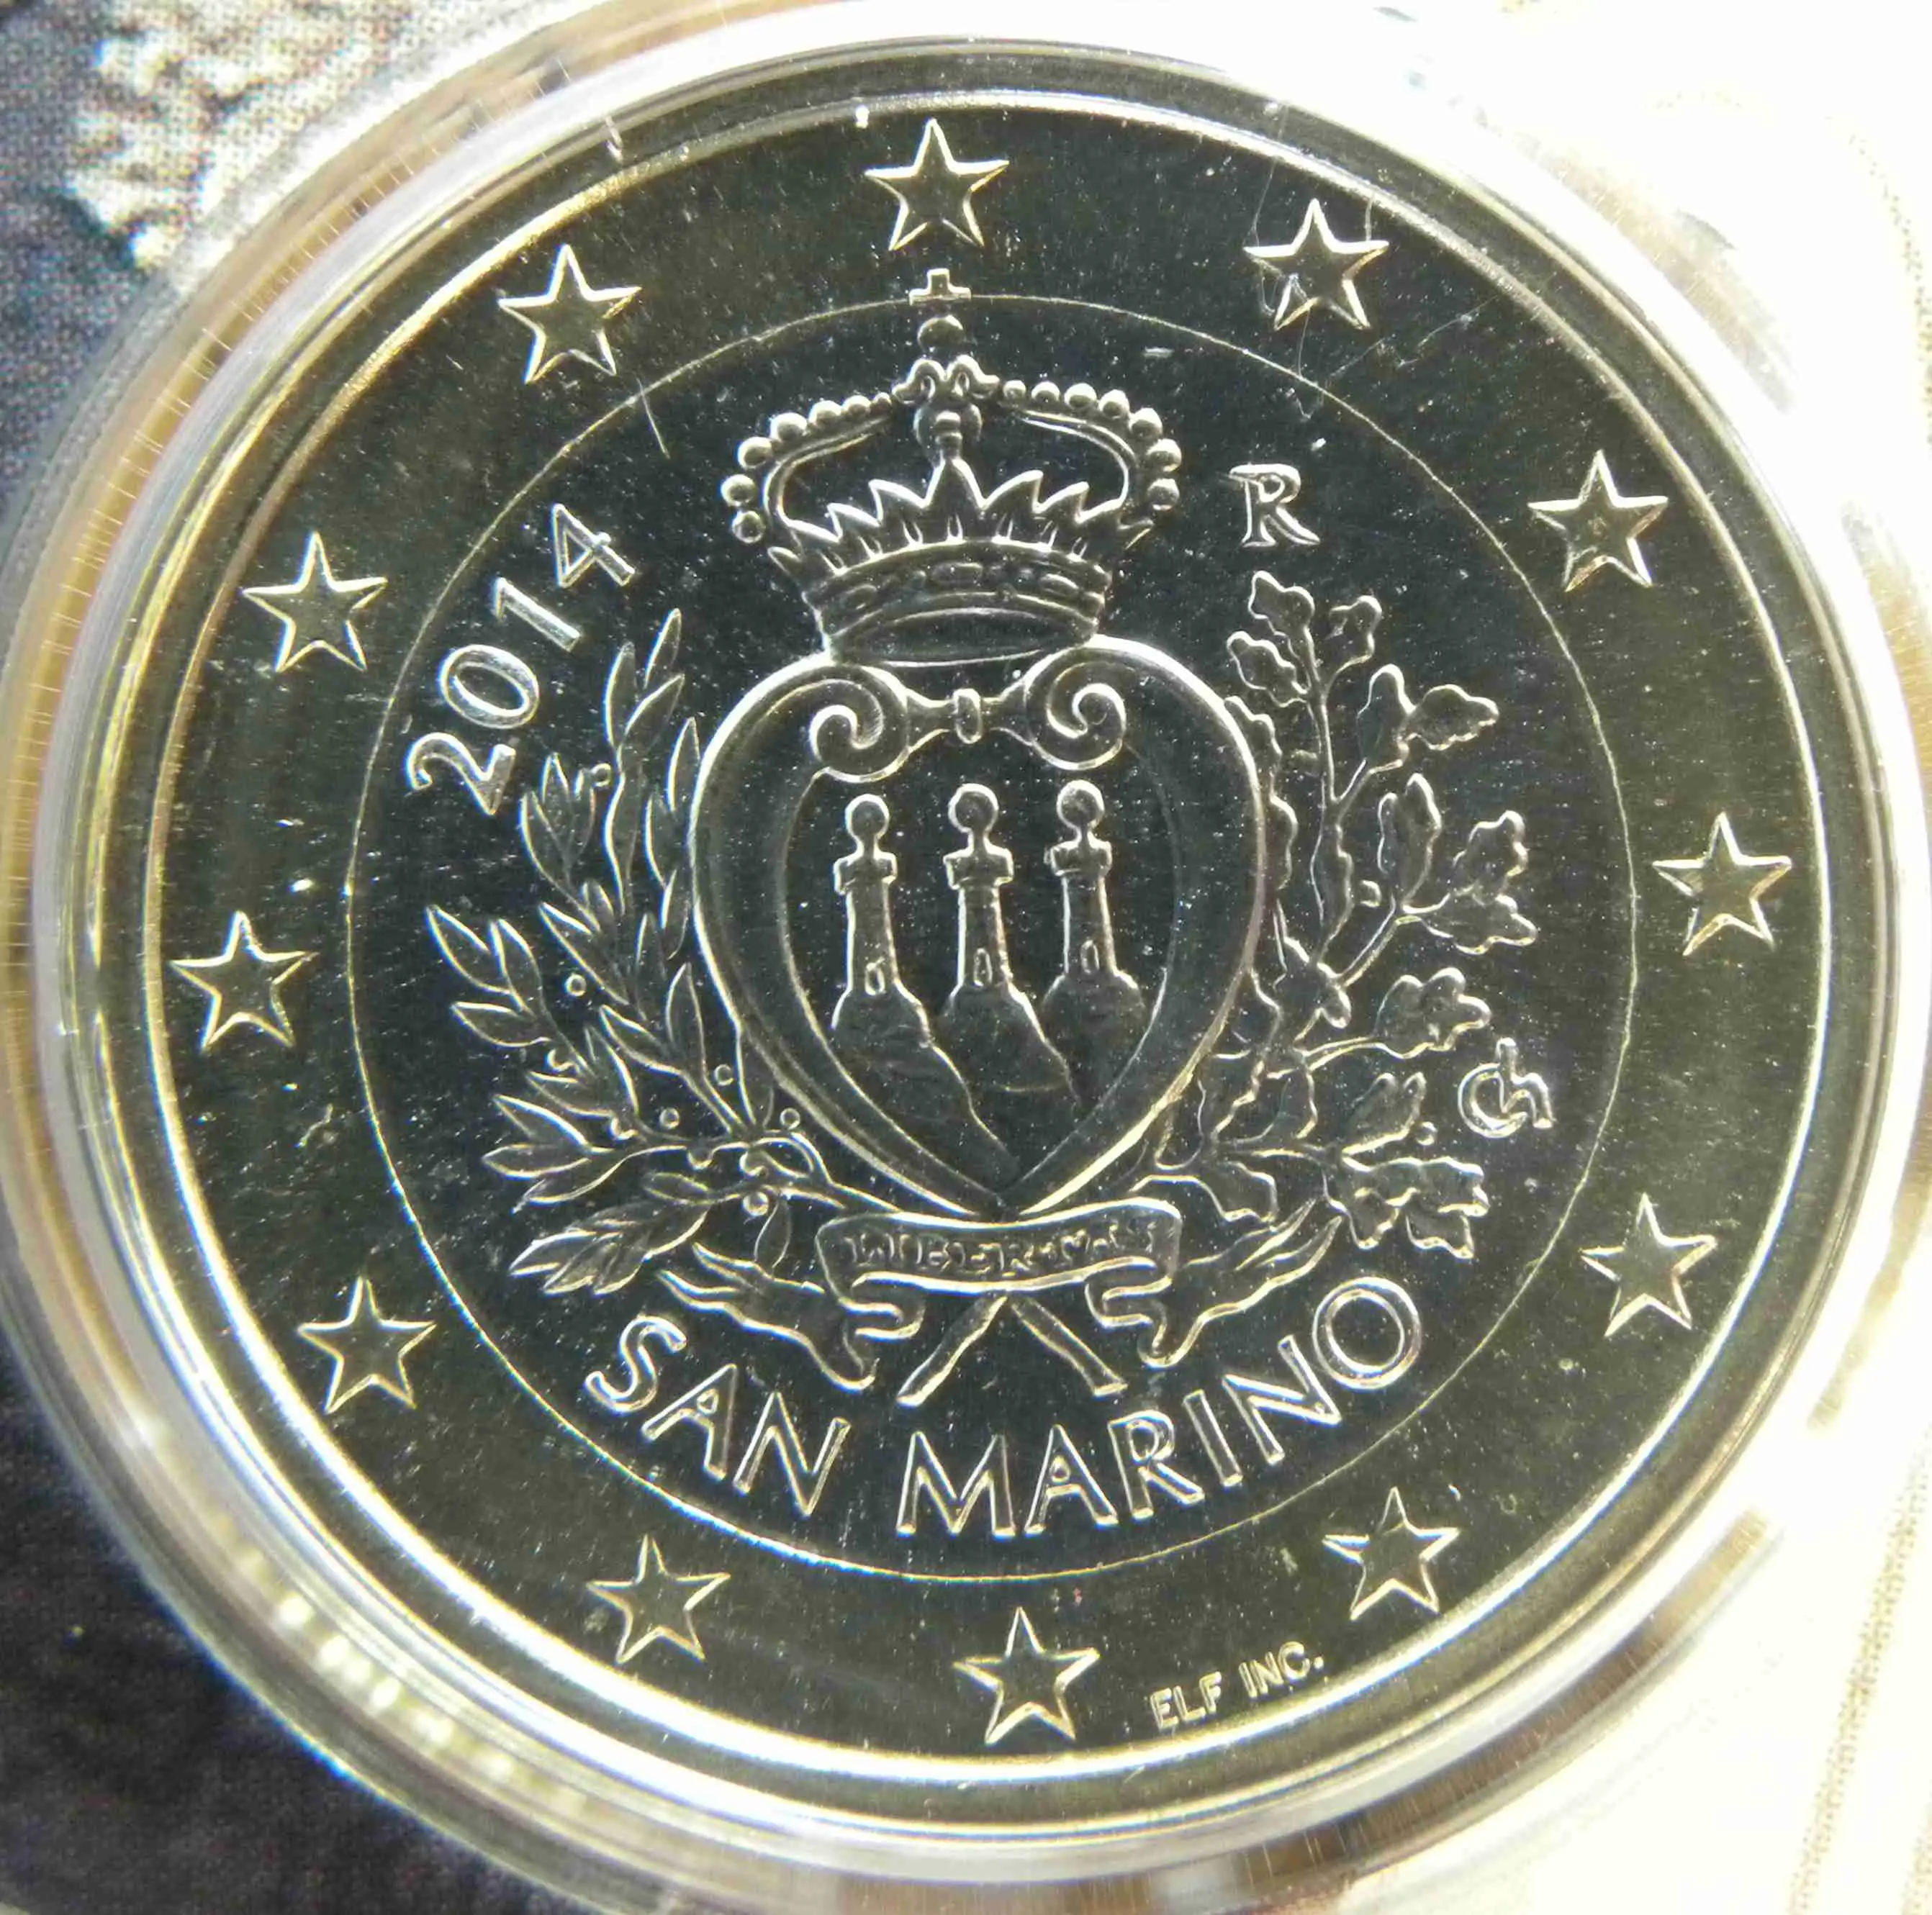 San Marino 1 Euro Münze 2014 - euro-muenzen.tv - Der Online Euromünzen